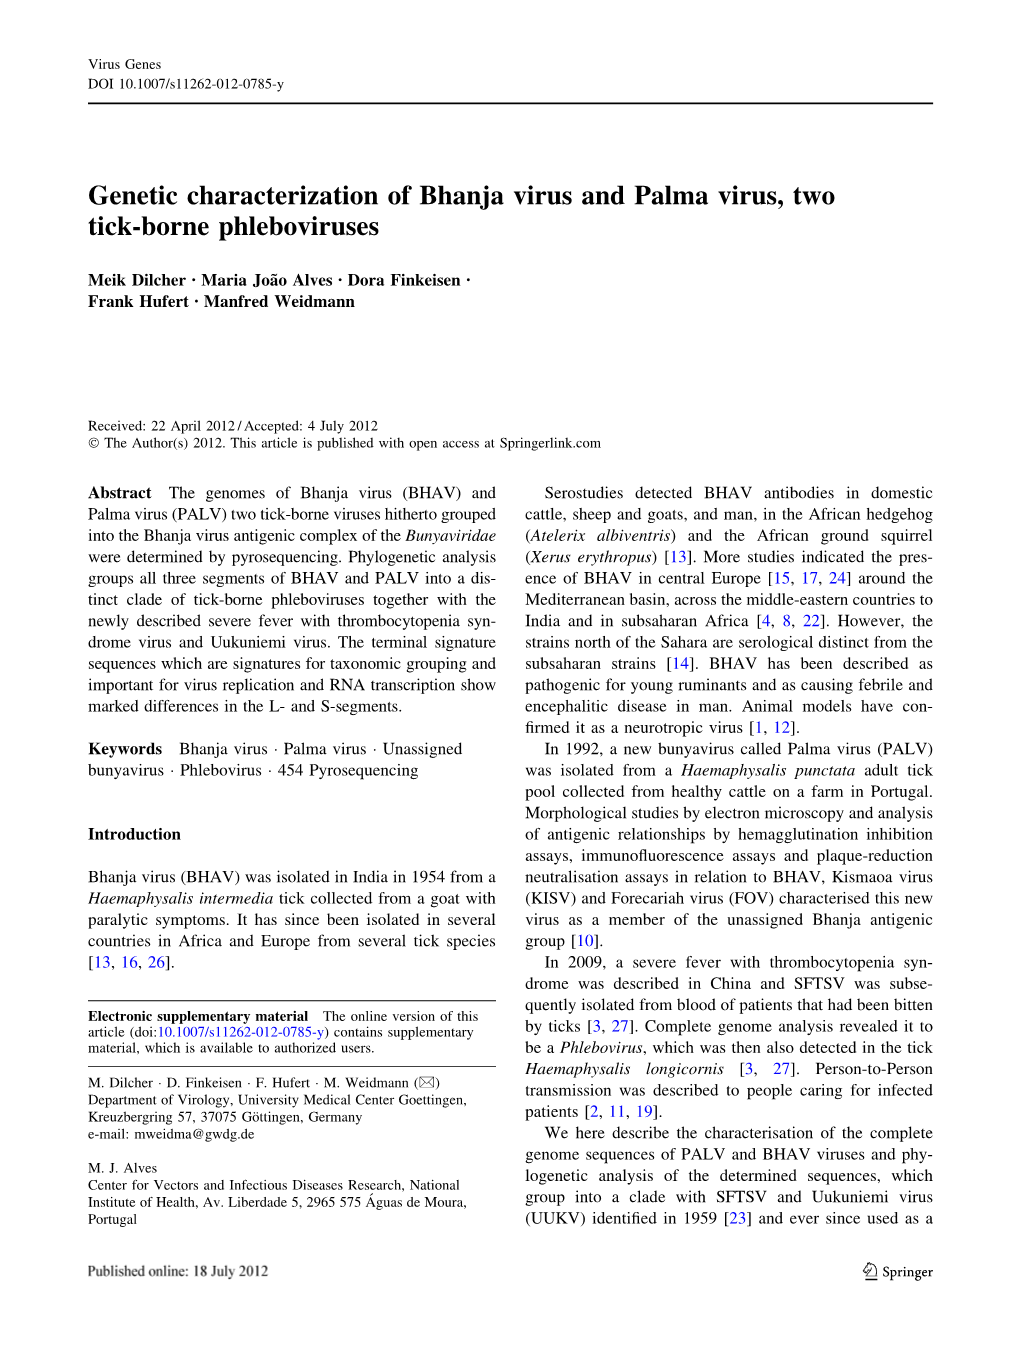 Genetic Characterization of Bhanja Virus and Palma Virus, Two Tick-Borne Phleboviruses